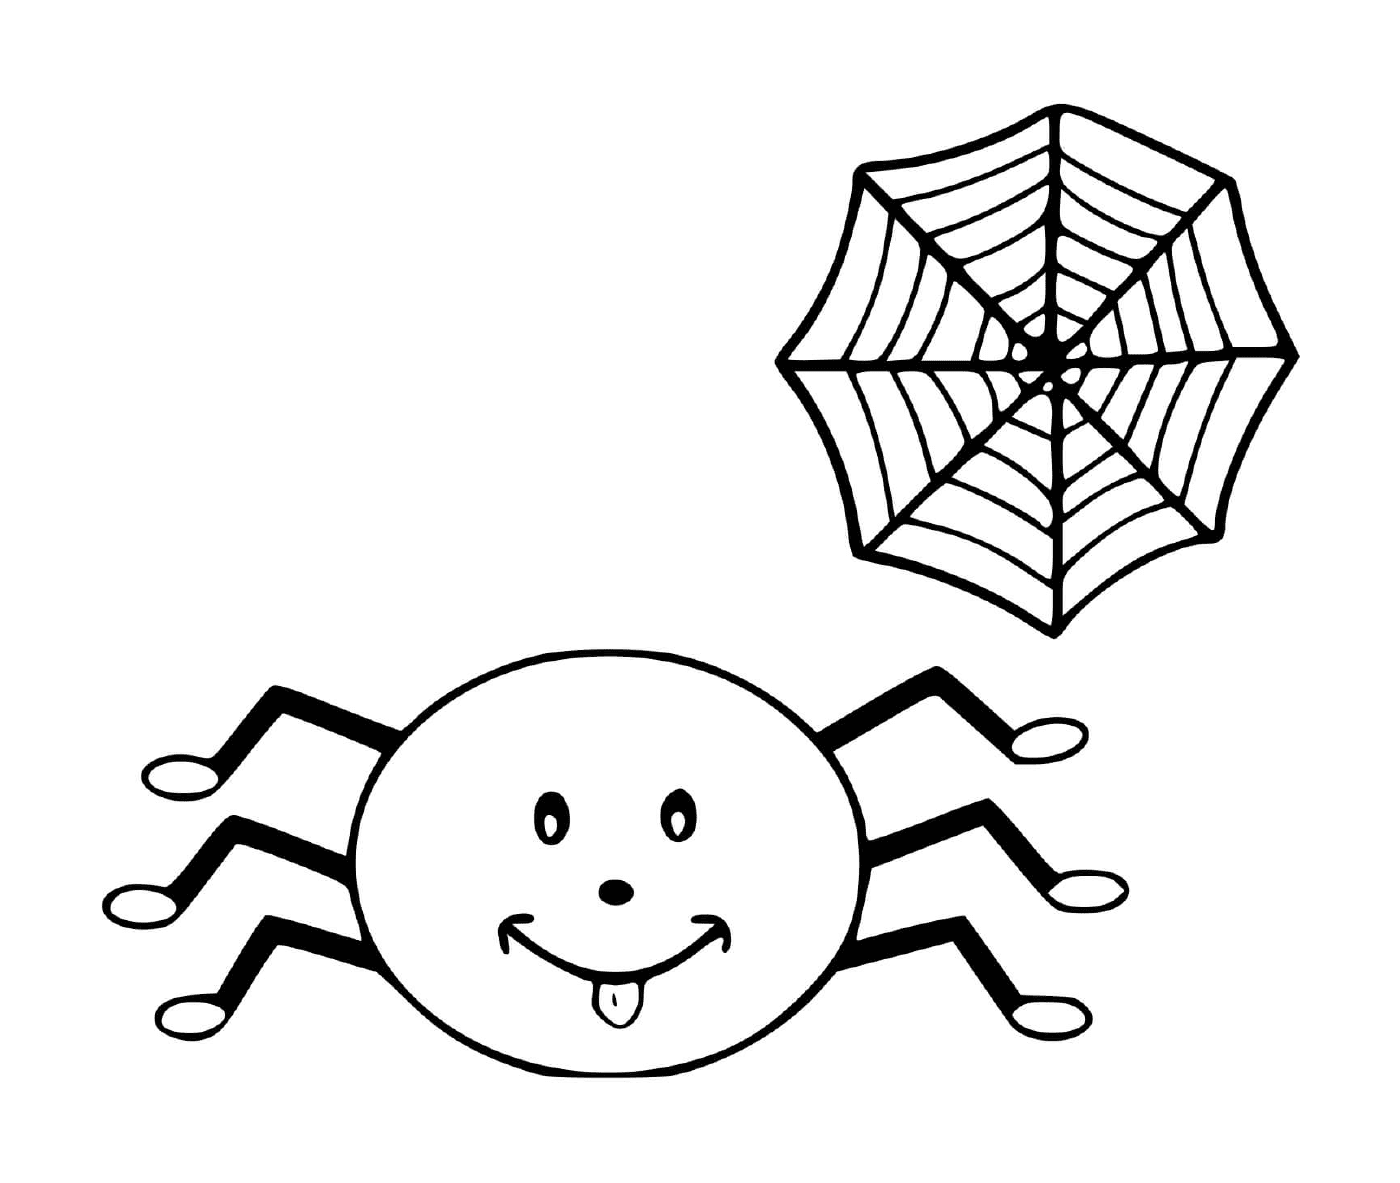  蜘蛛和网 